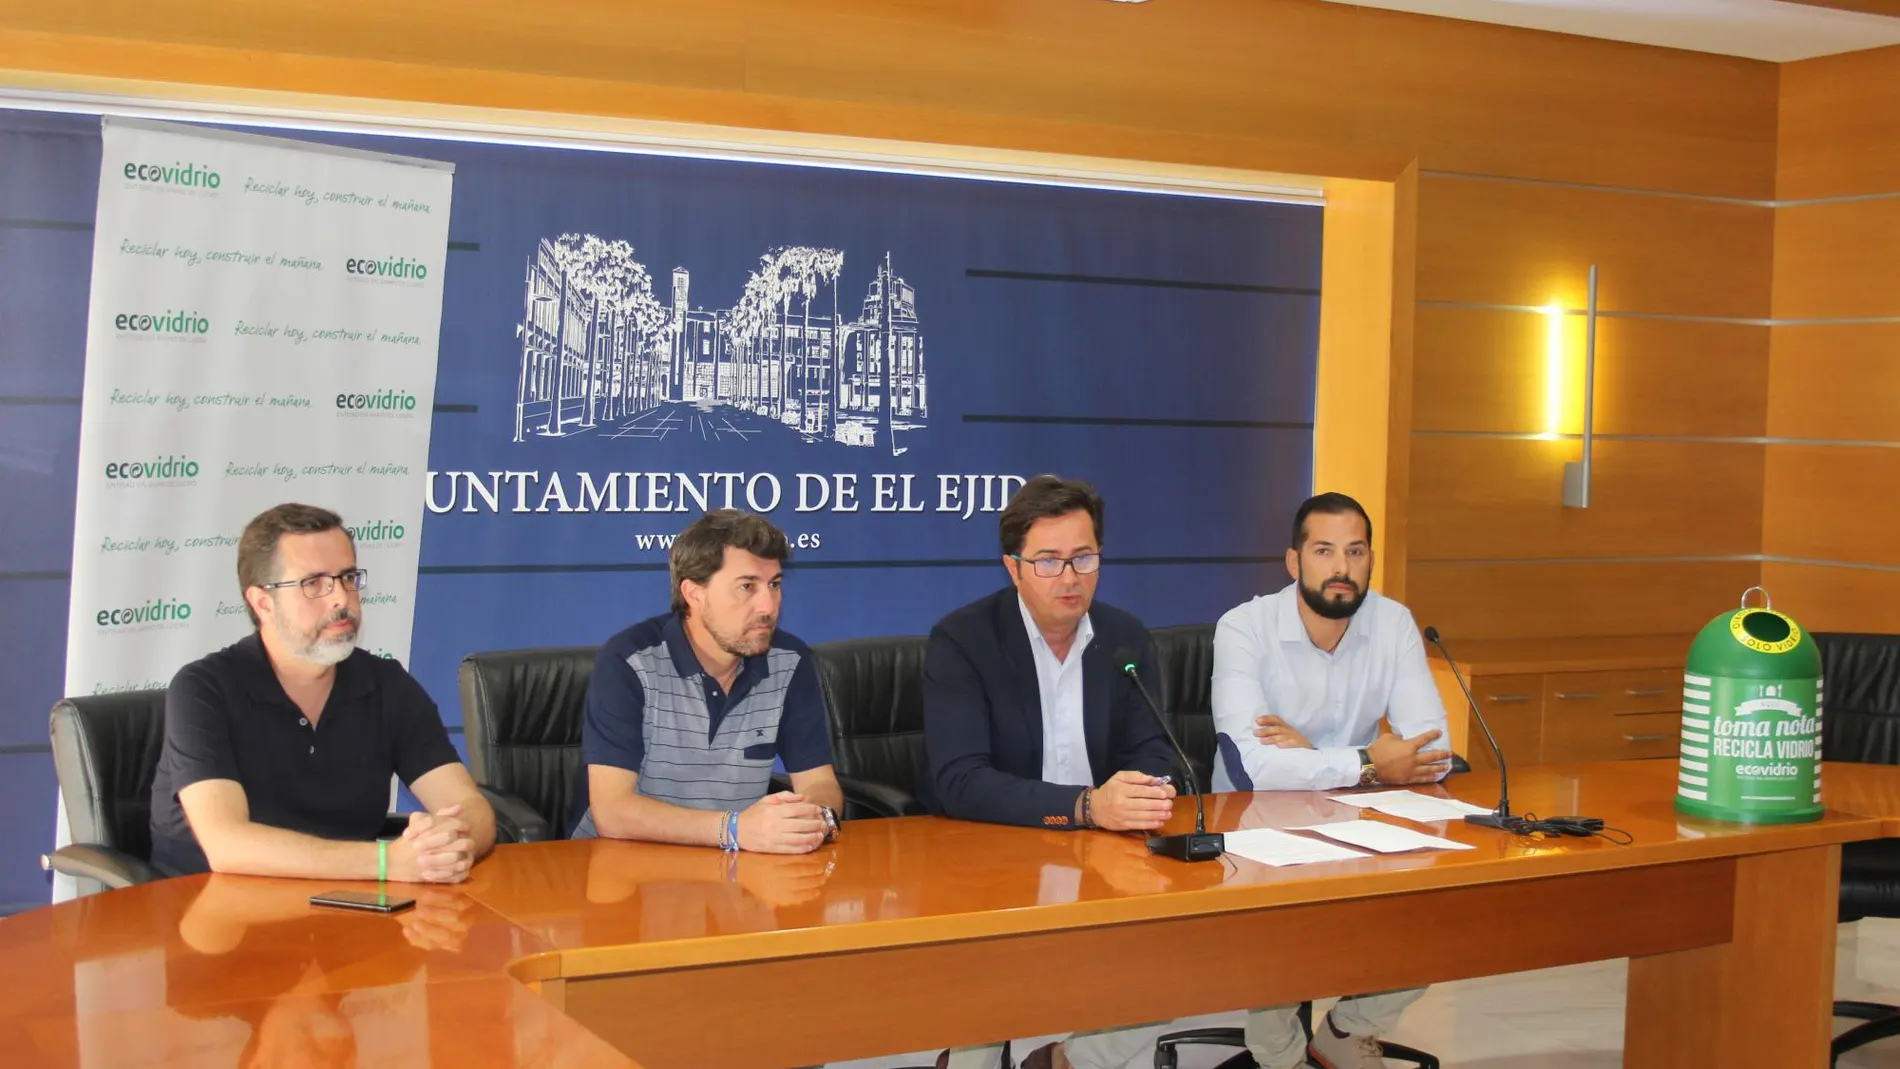 El alcalde de El Ejido, Francisco Góngora, e Iván González, técnico de Gerencia de Andalucía Oriental de Ecovidrio, han presentado la iniciativa ecologista, esta mañana en El Ejido / La Razón